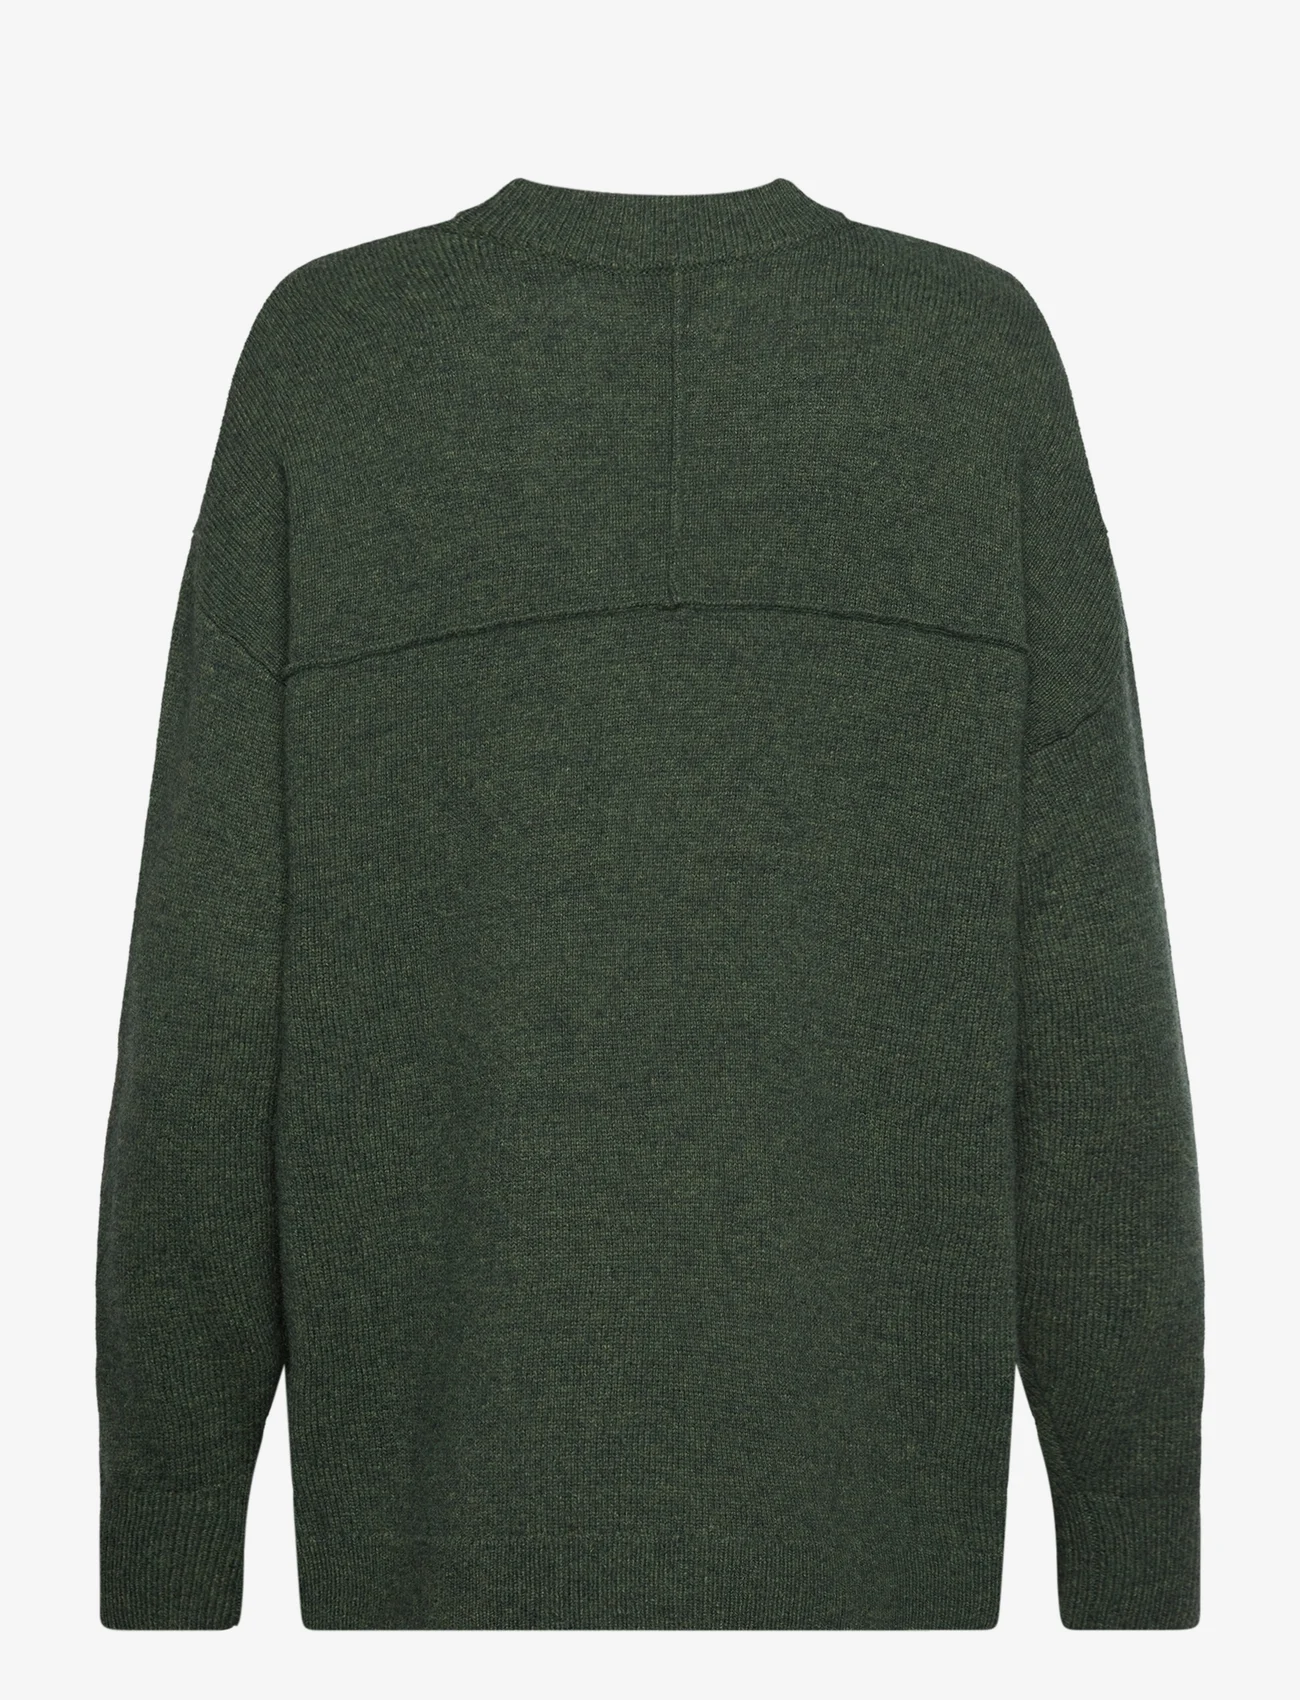 NORR - Sinna o-neck knit top - dark green melange - 1